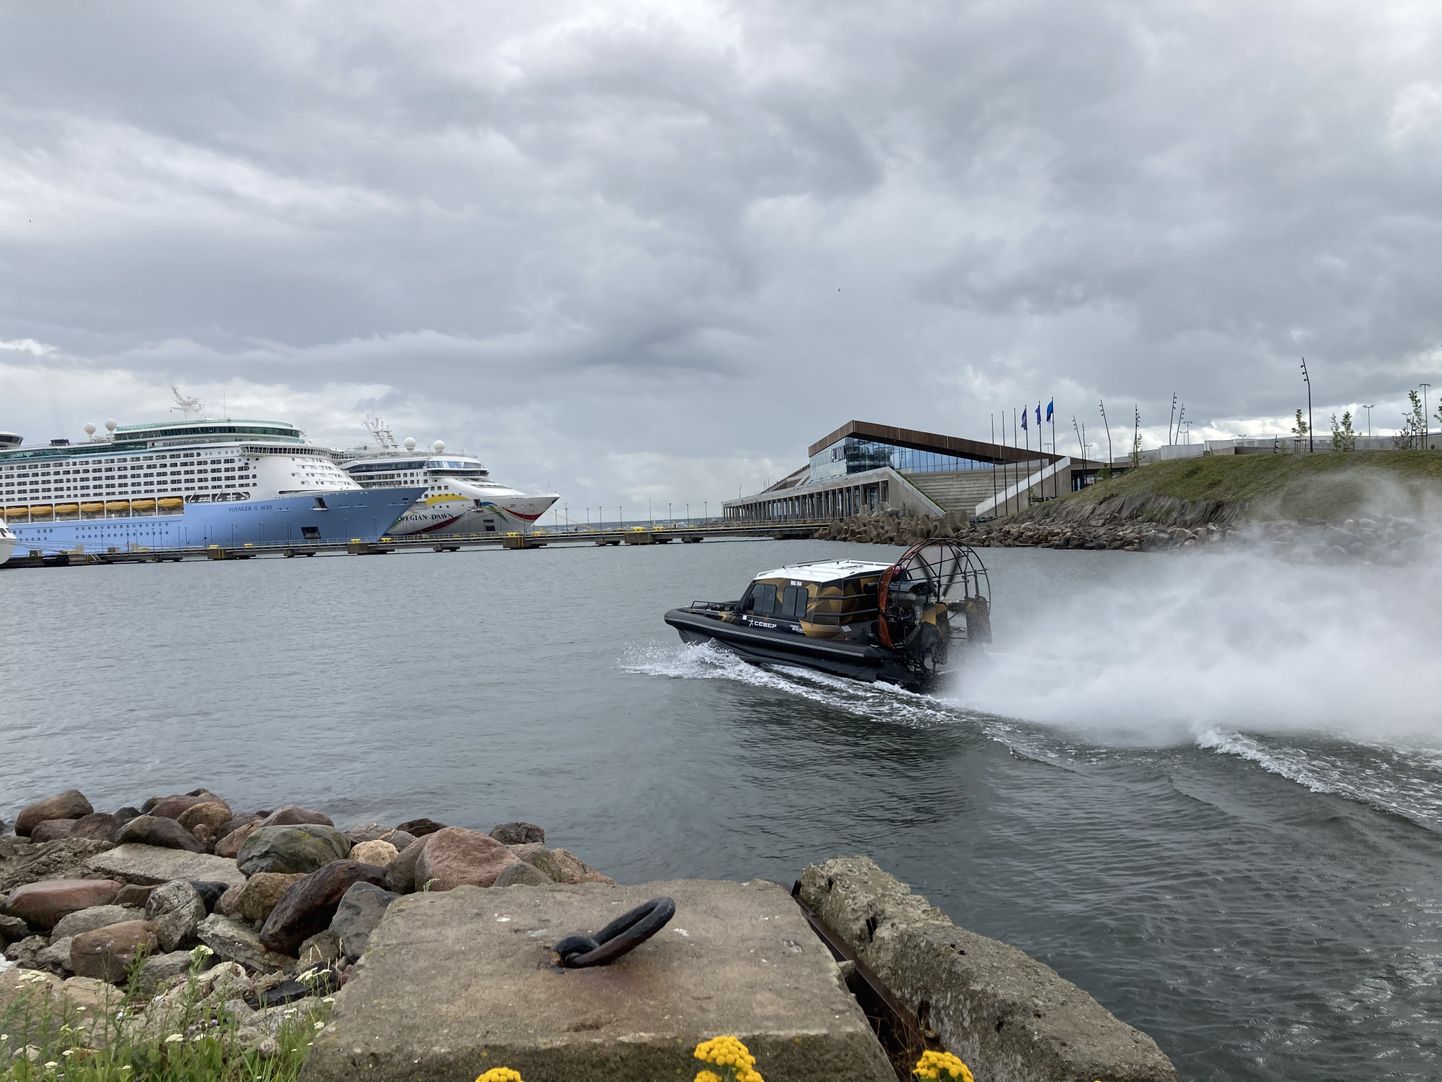 Tänavustel Tallinna merepäevadel saab sõita ka tõenäoliselt kiireima siinsetes vetes liikuva sõiduki - aeroglisseriga.